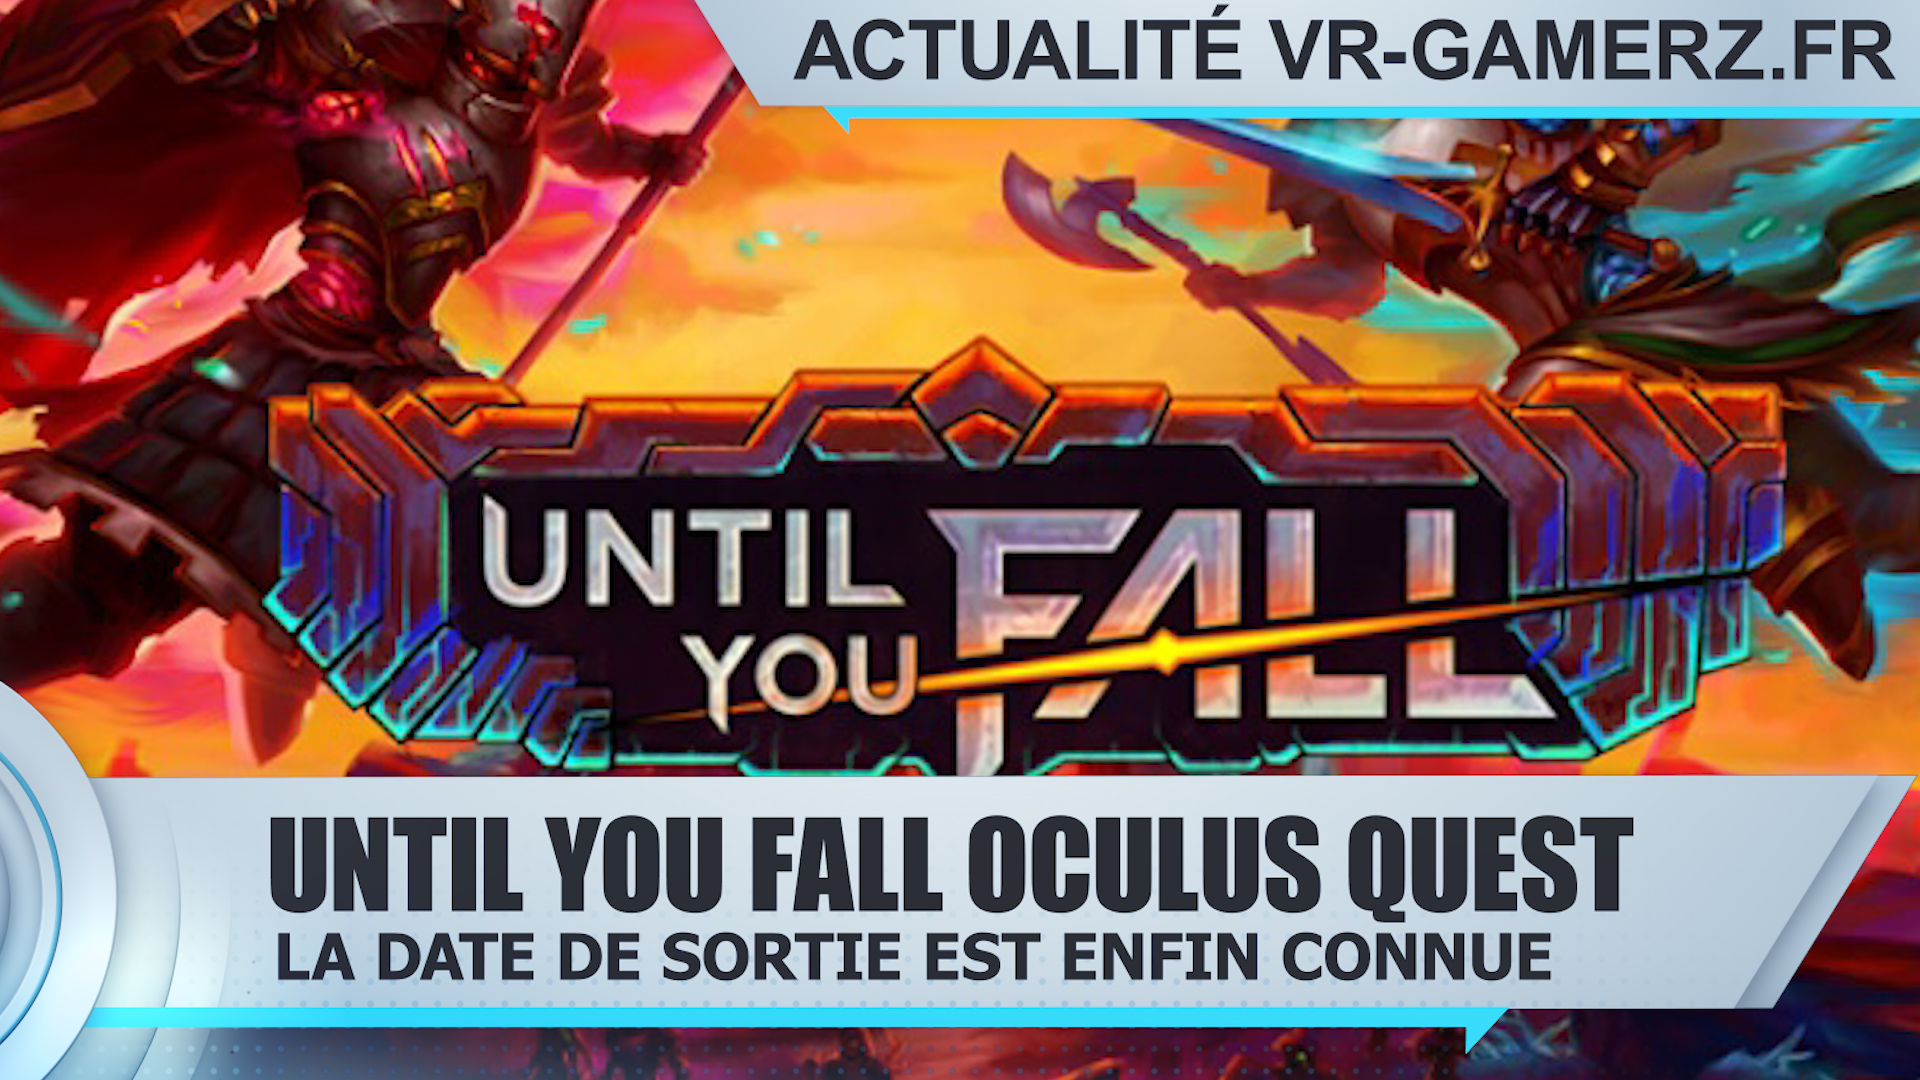 Until you fall Oculus quest : La date de sortie est enfin connue !